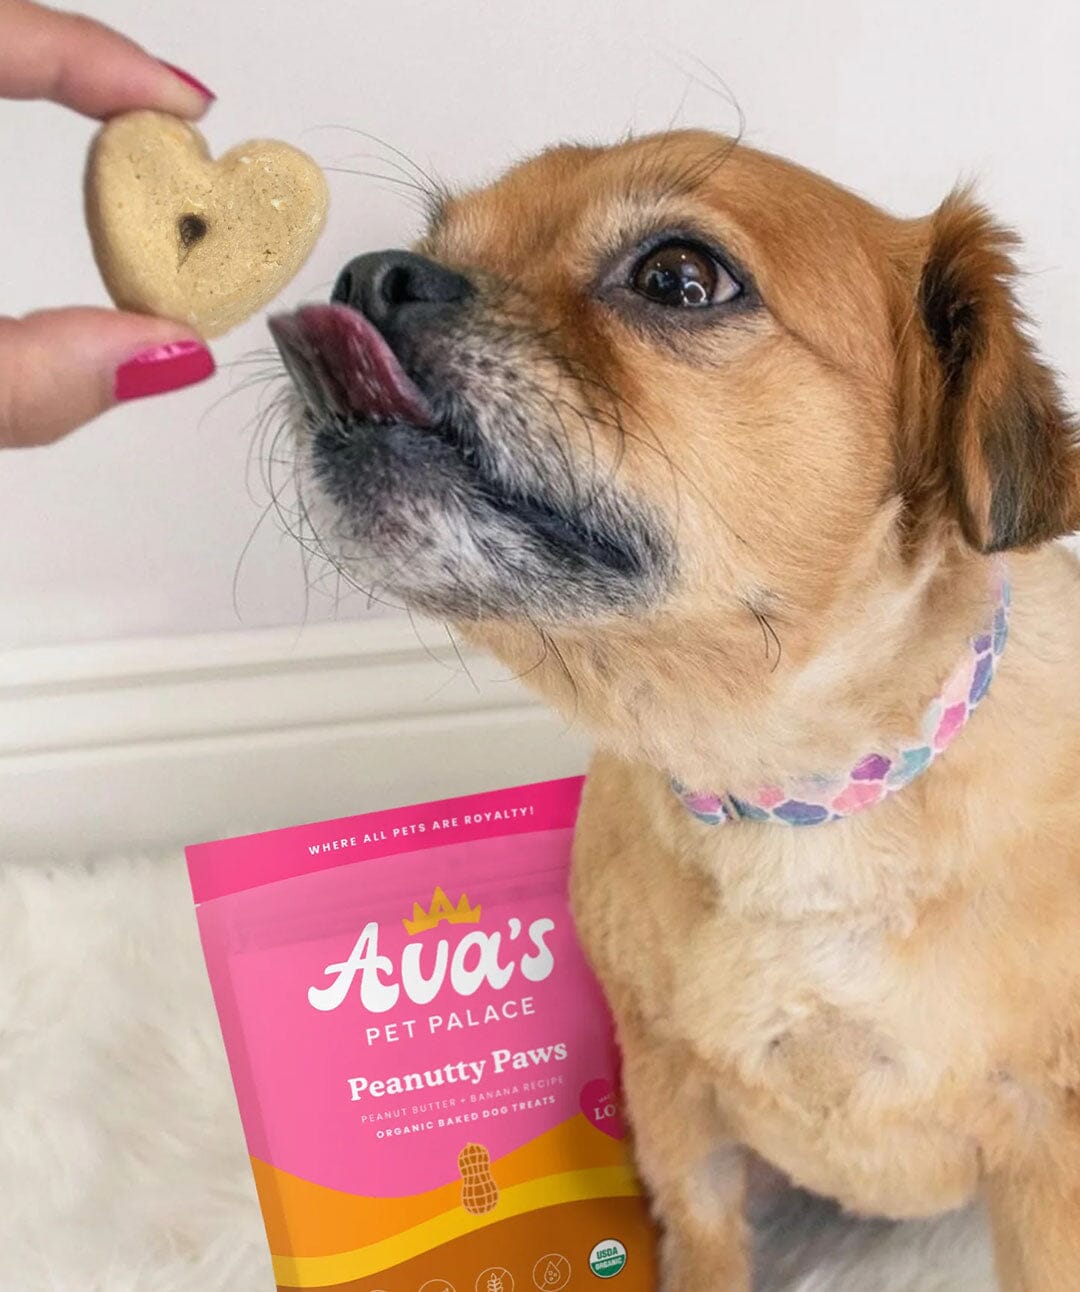 Ava’s Pet Palace Peanutty Paws Baked Dog Treats Dog Treats Rover 